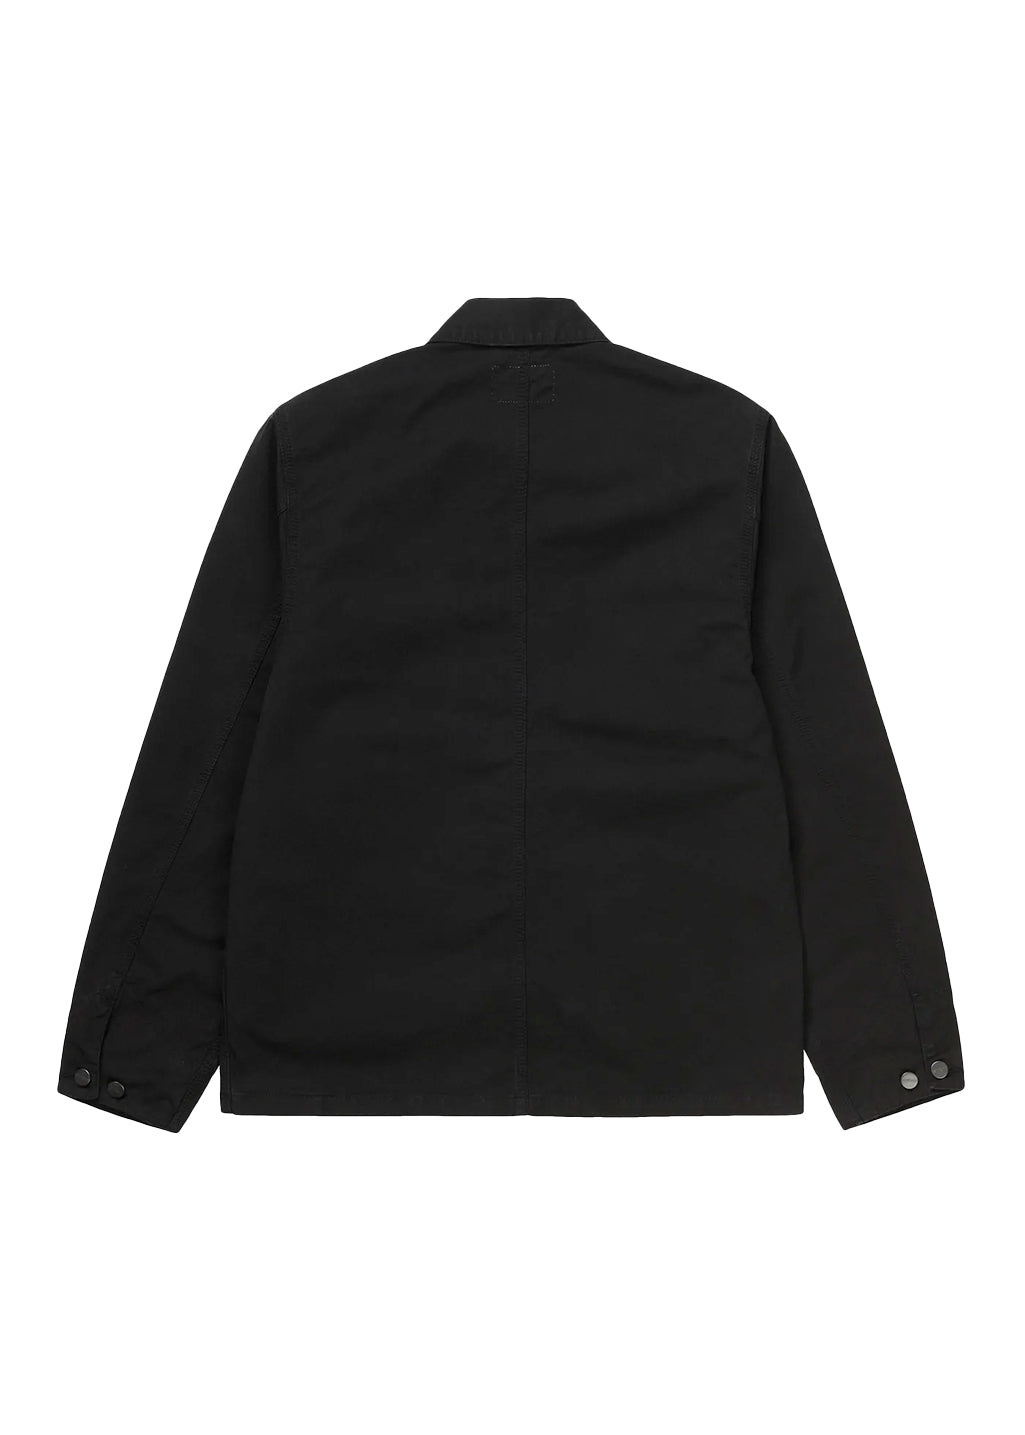 Carhartt WIP - Michigan Coat (Chore Coat) - Black